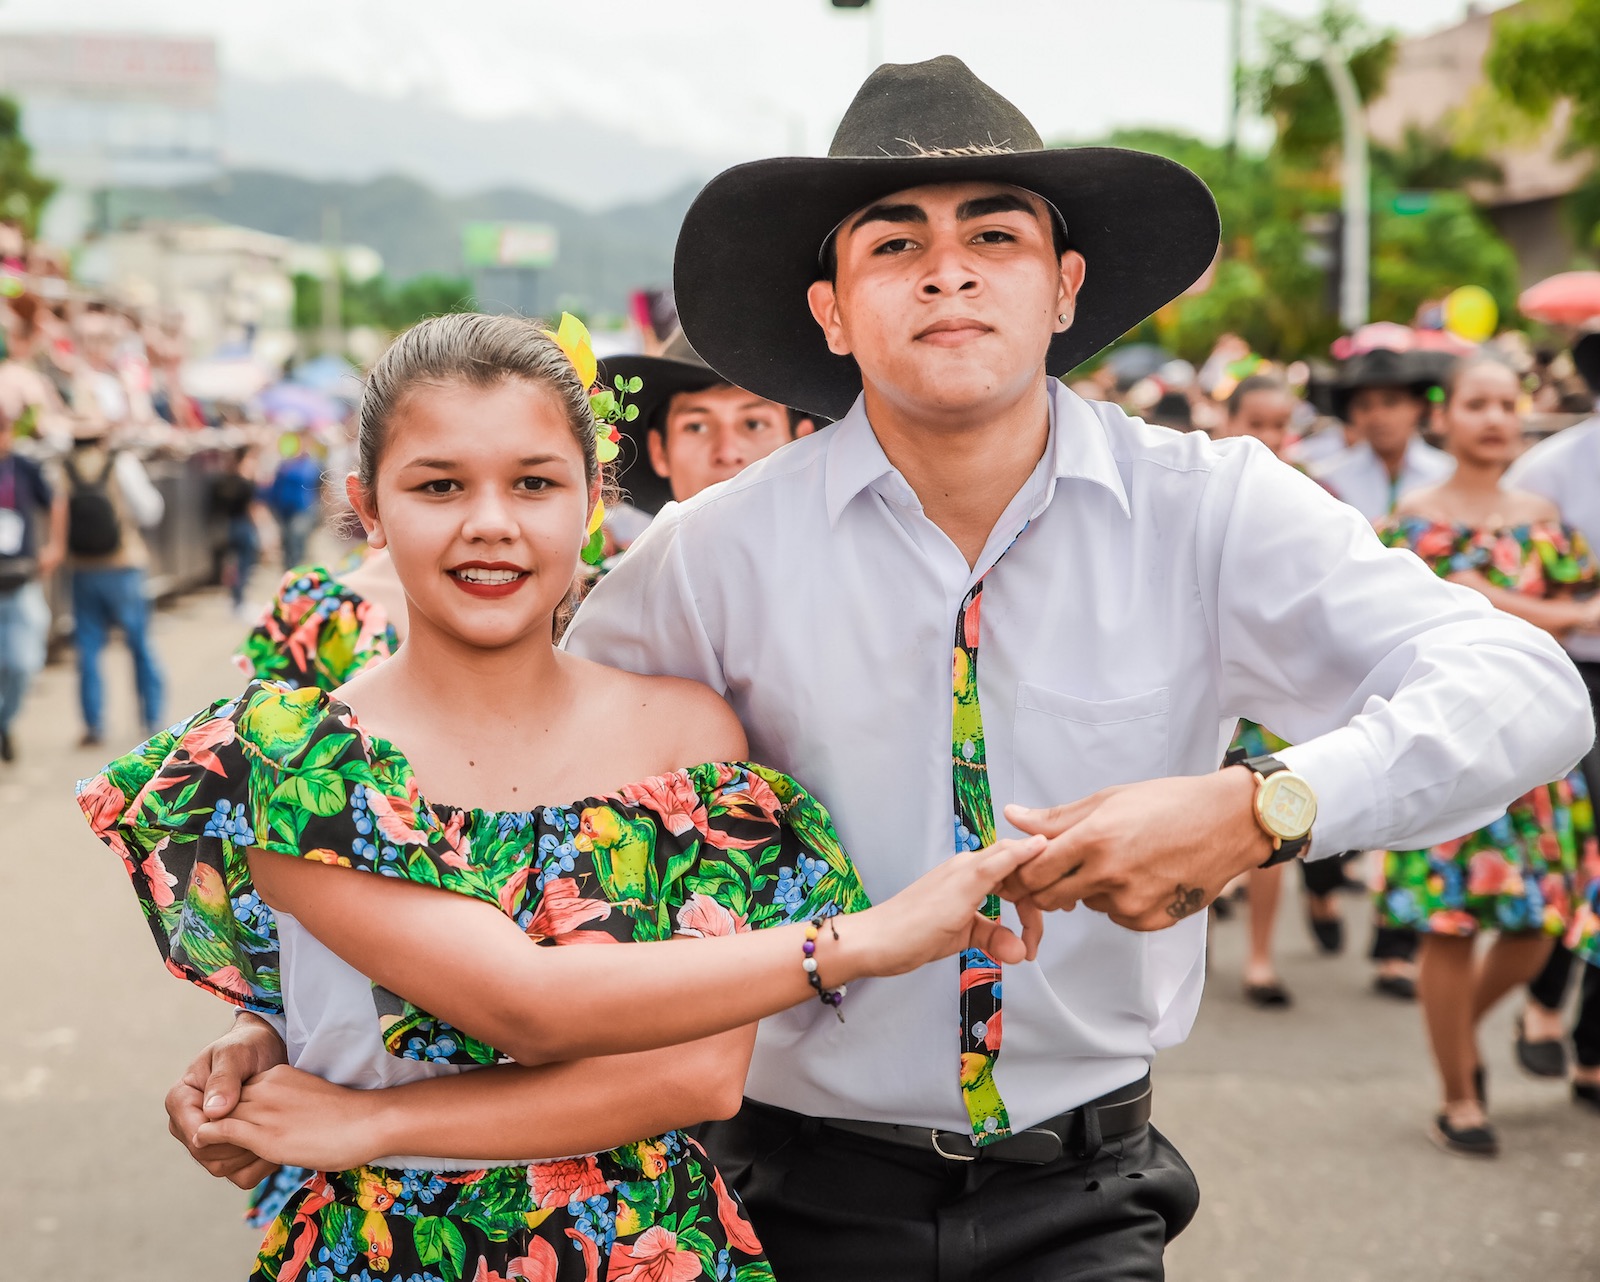 Festival llanero de Villavicencio 2019